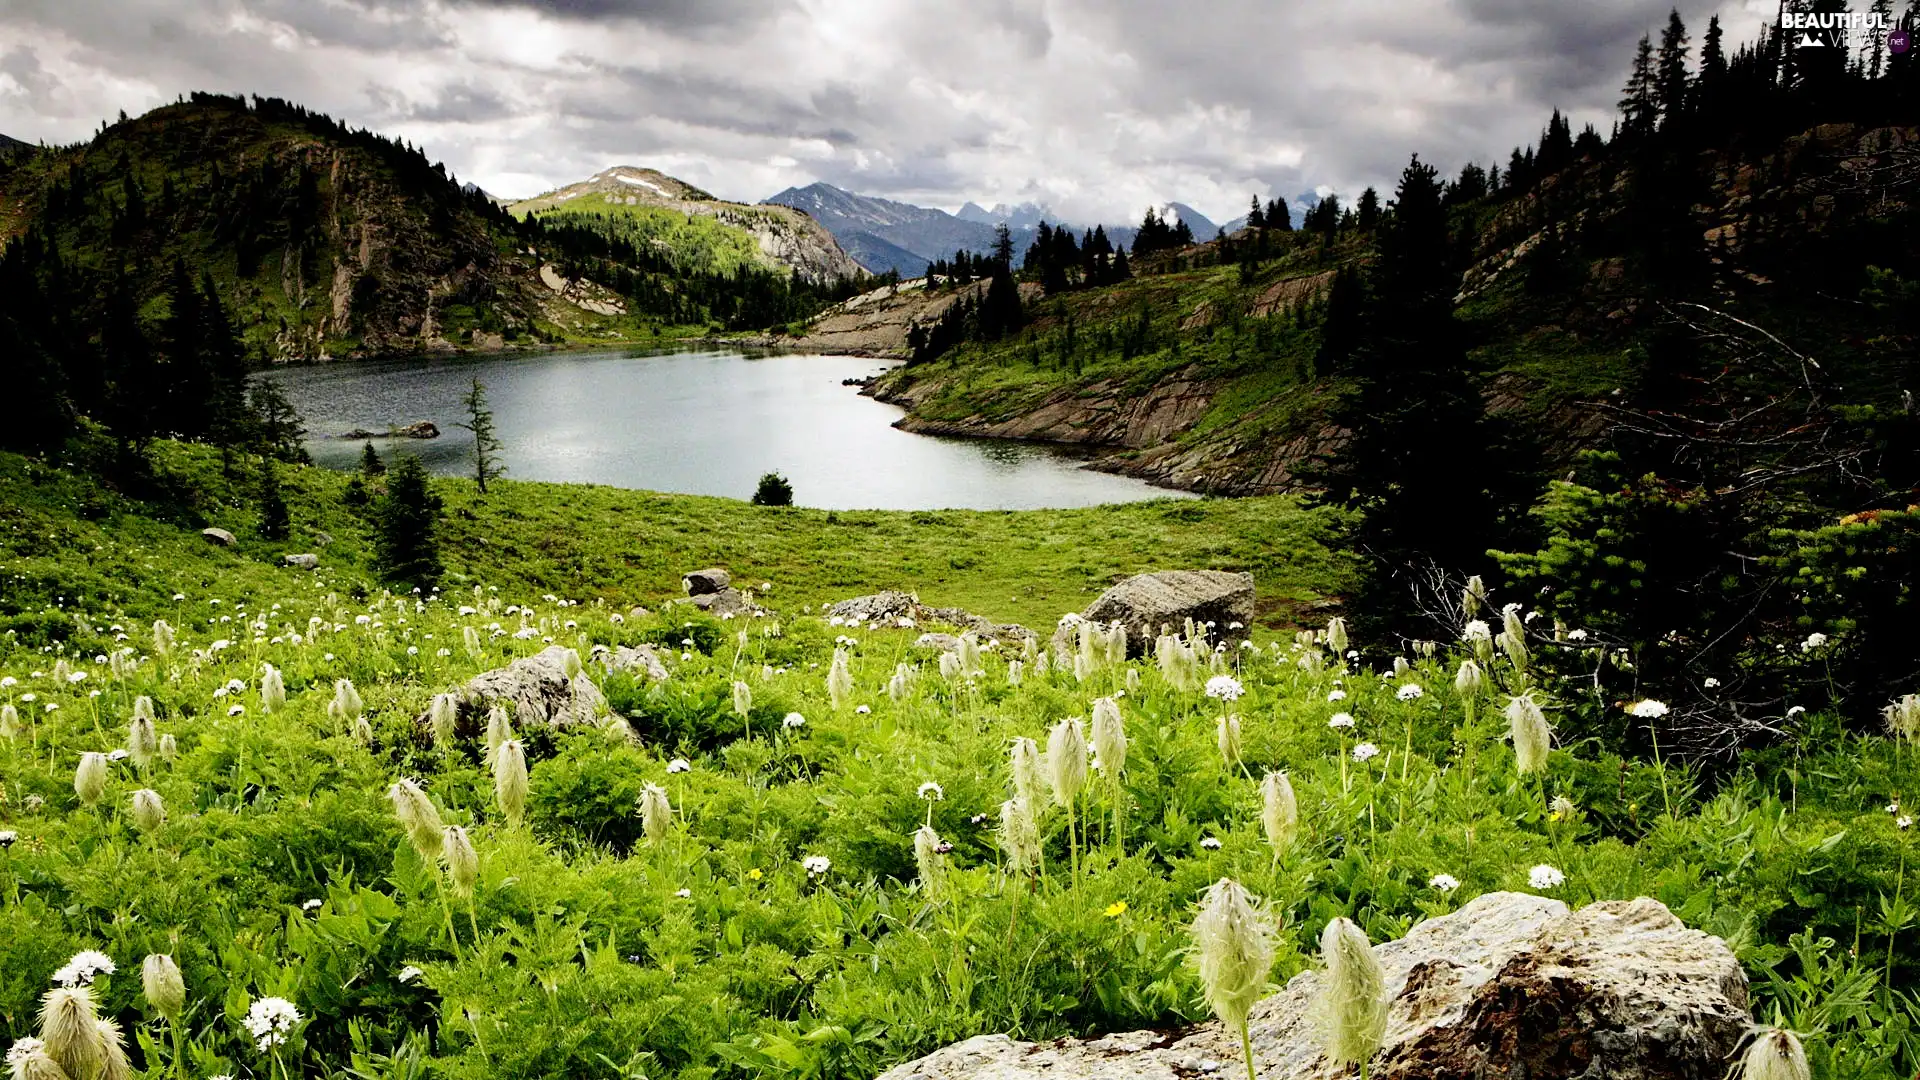 Meadow, Mountains, lake